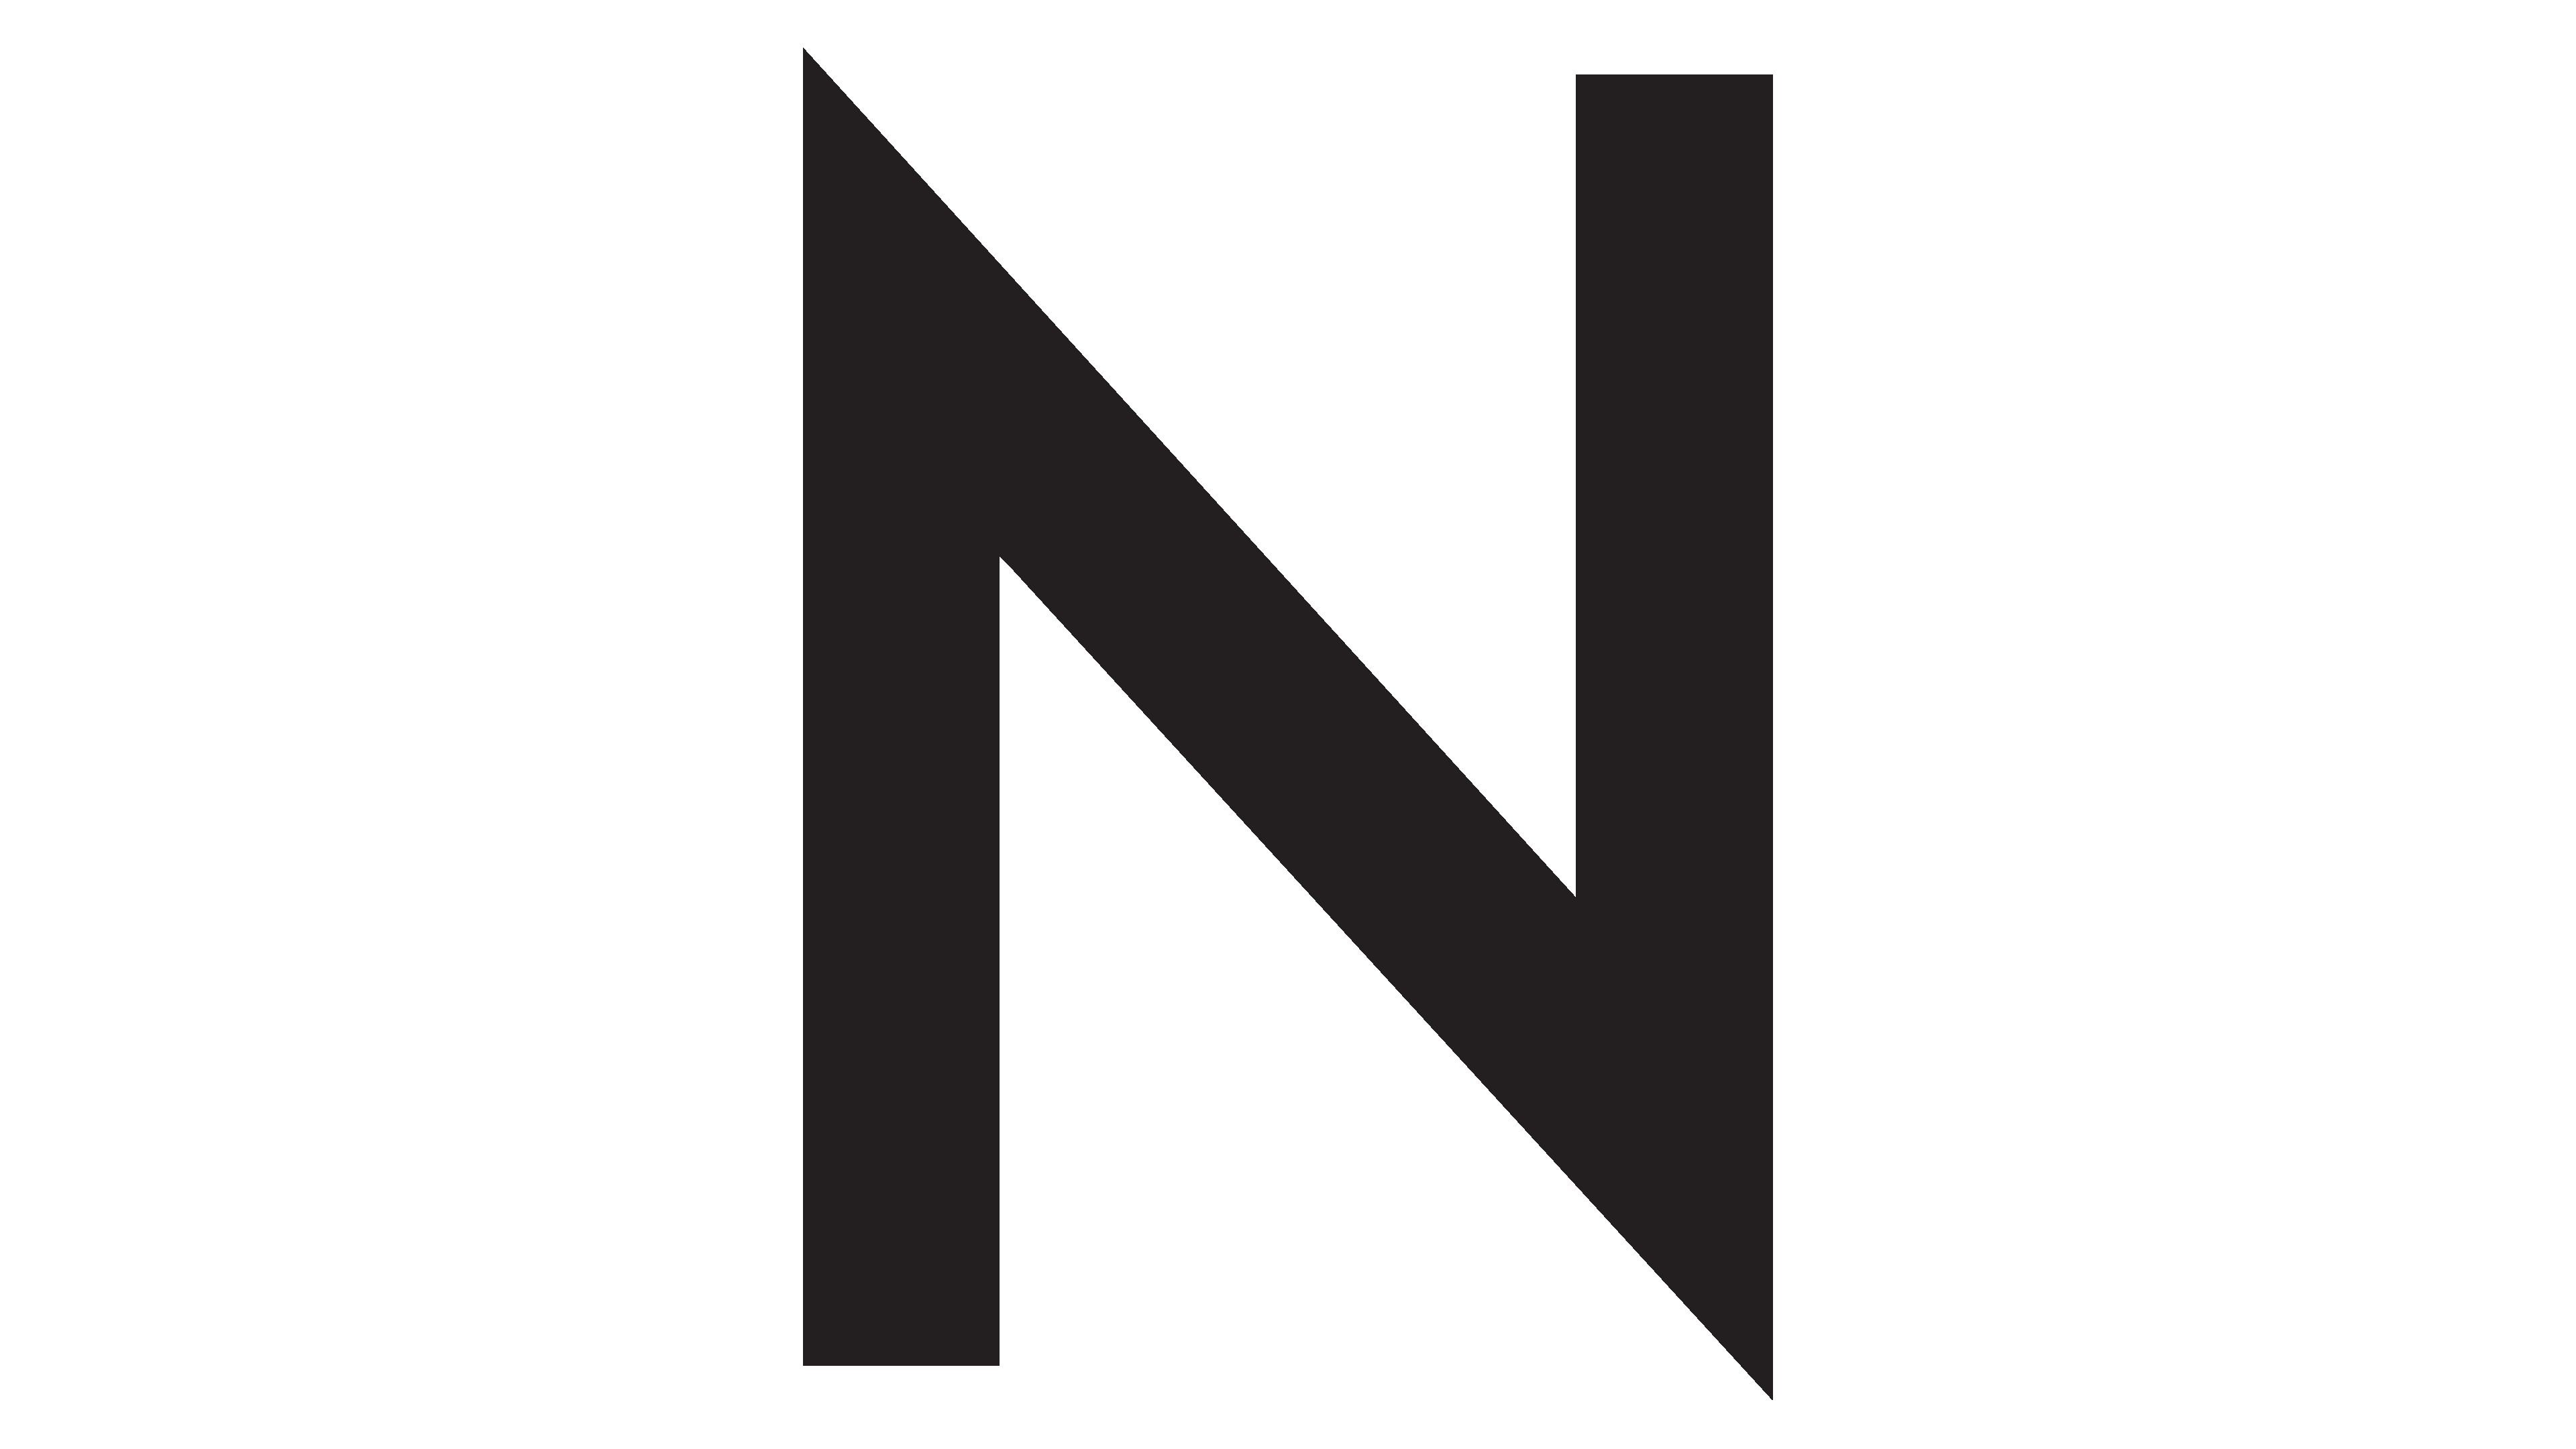 Nordstrom Logo Transparent